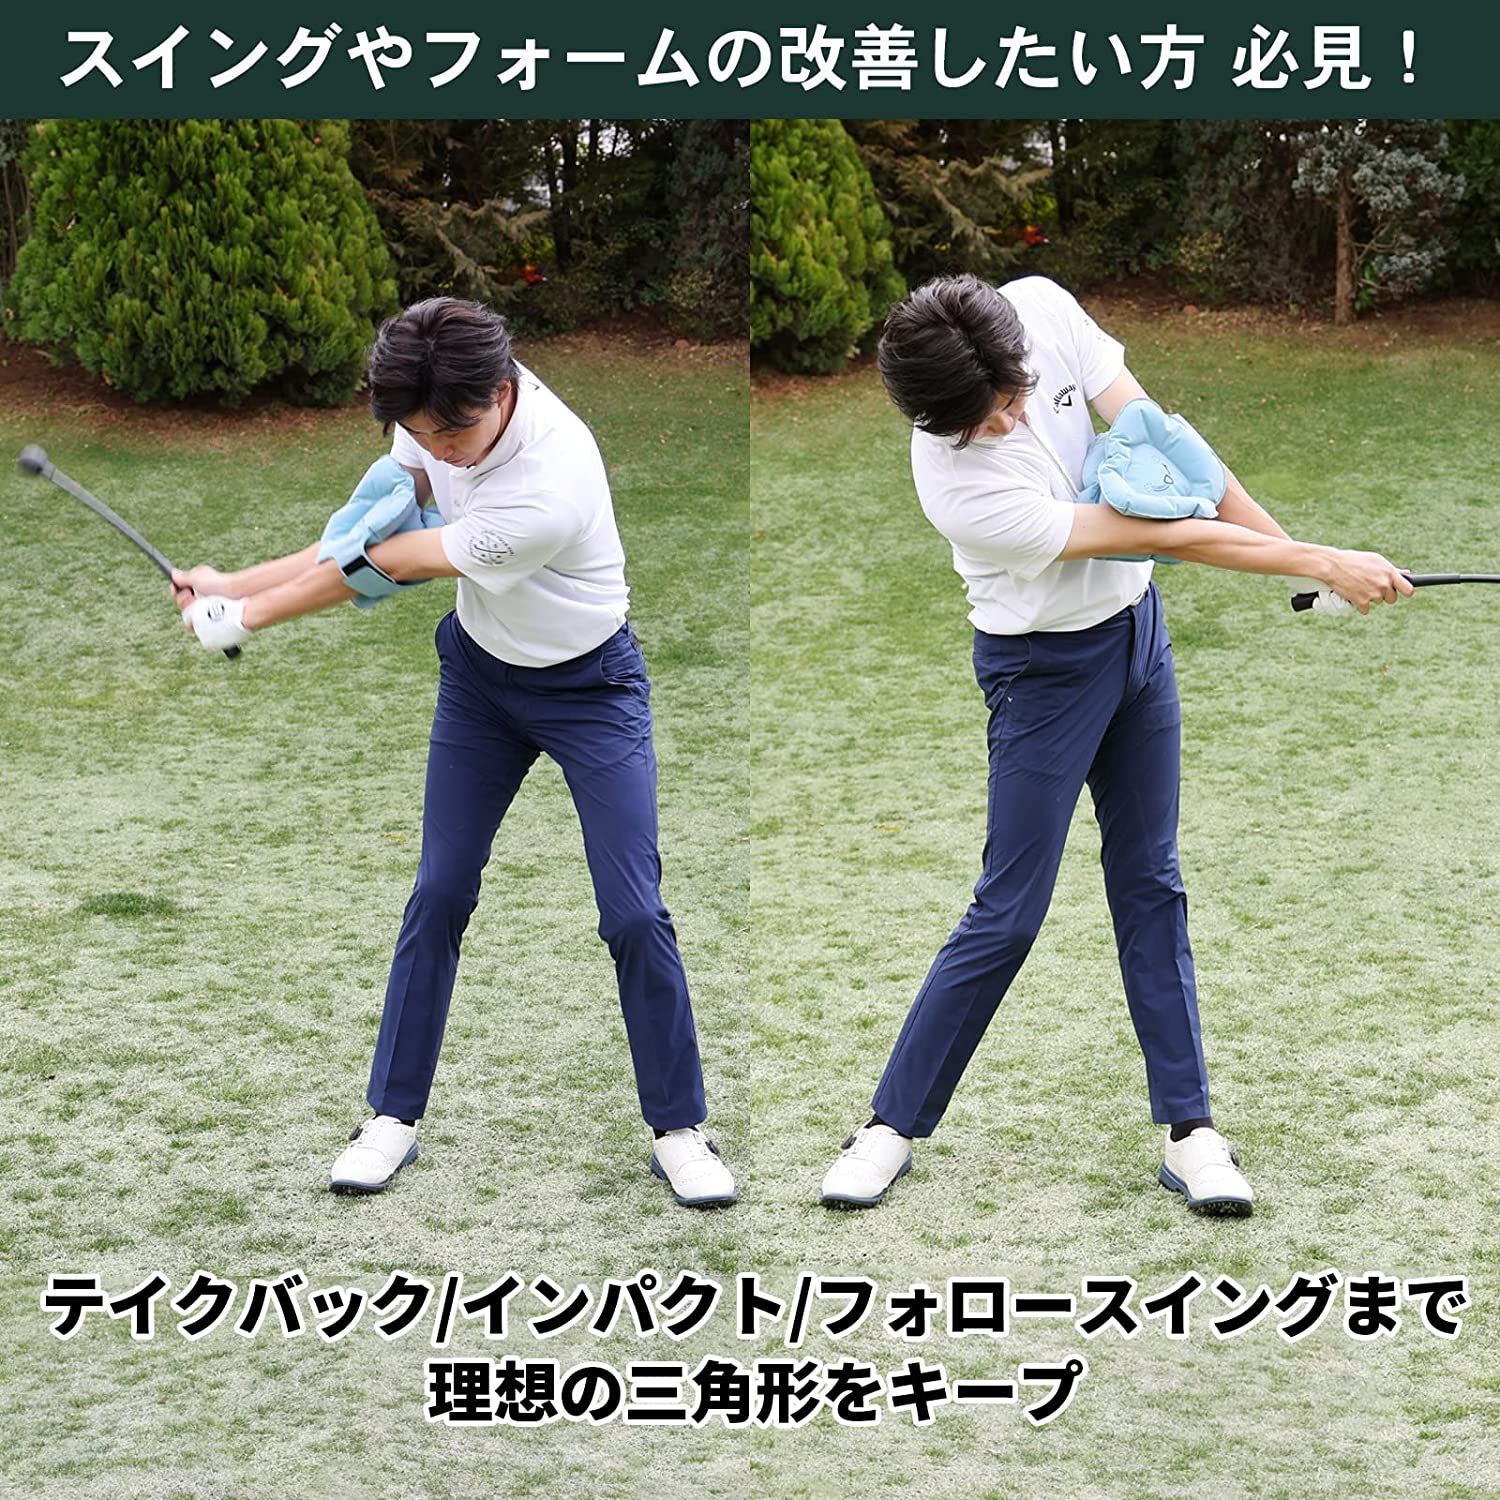 注目 Tabata タバタ ゴルフ 素振り 練習器具 ゴルフ練習用品 三角先生